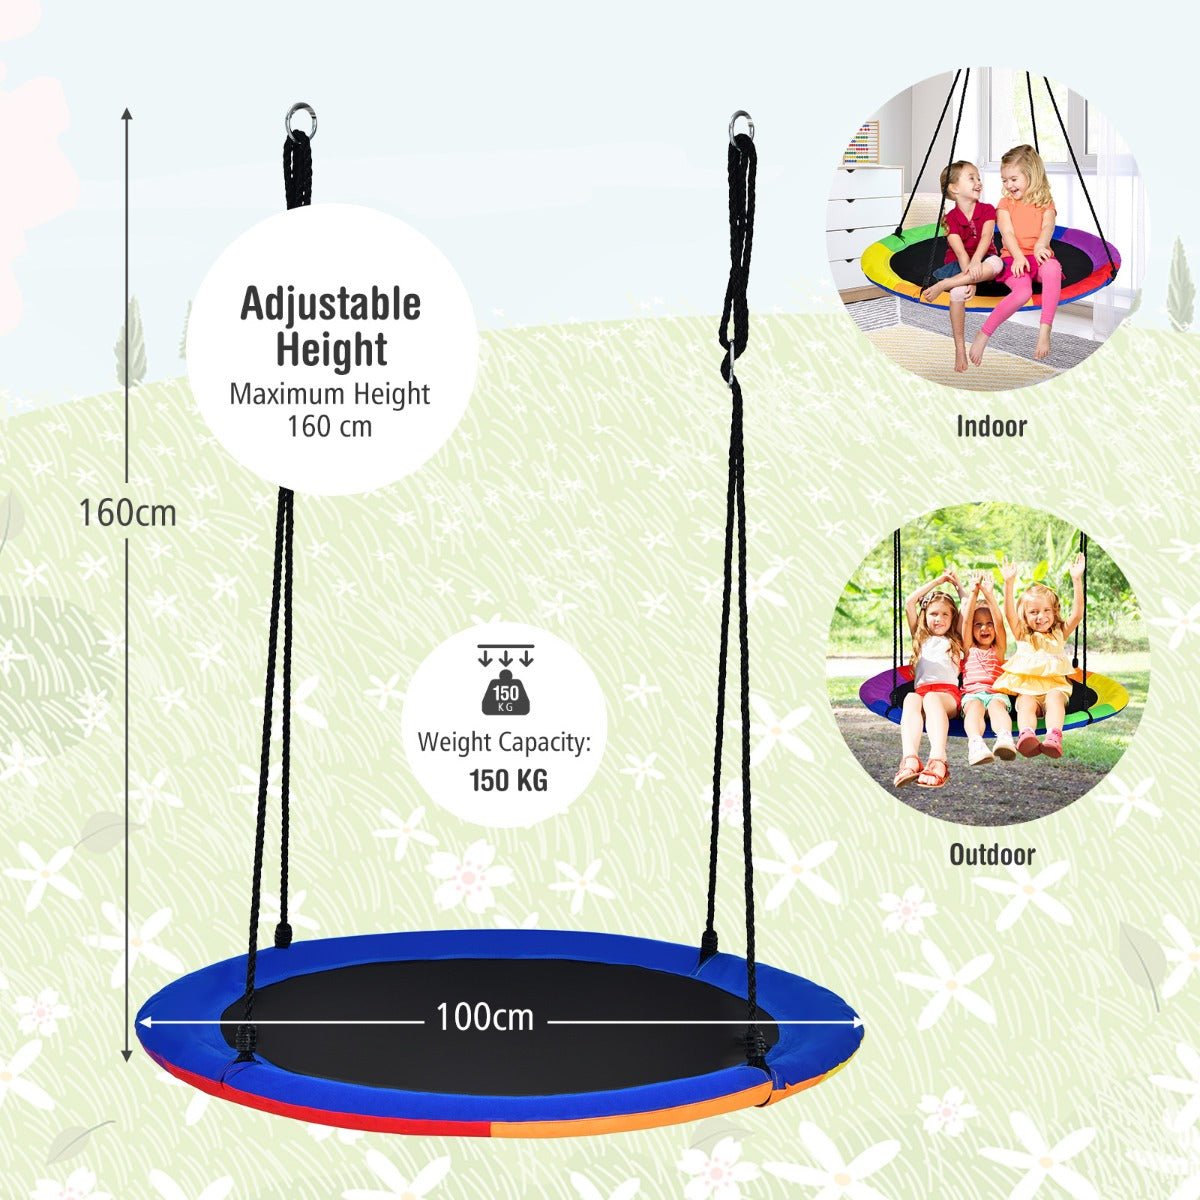 Blue Saucer Tree Swing: Foam-Padded Galvanized Tube for Kids Playtime